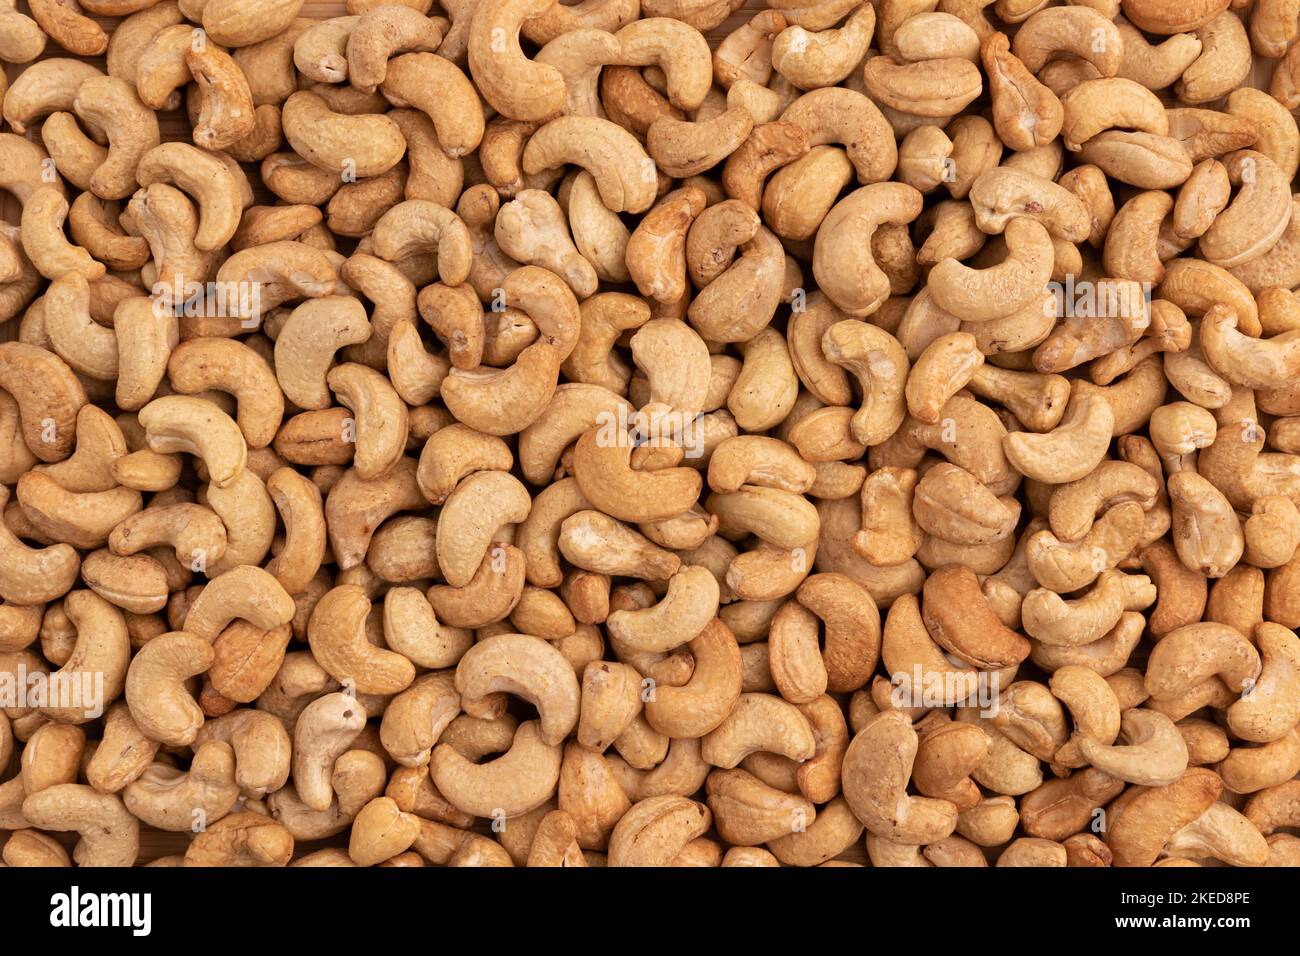 Hintergrund von Bio-Cashewnüssen, geröstetem gesalzenem Cashew für Snacks, gesunde Ernährung, leckeres Frühstück Stockfoto